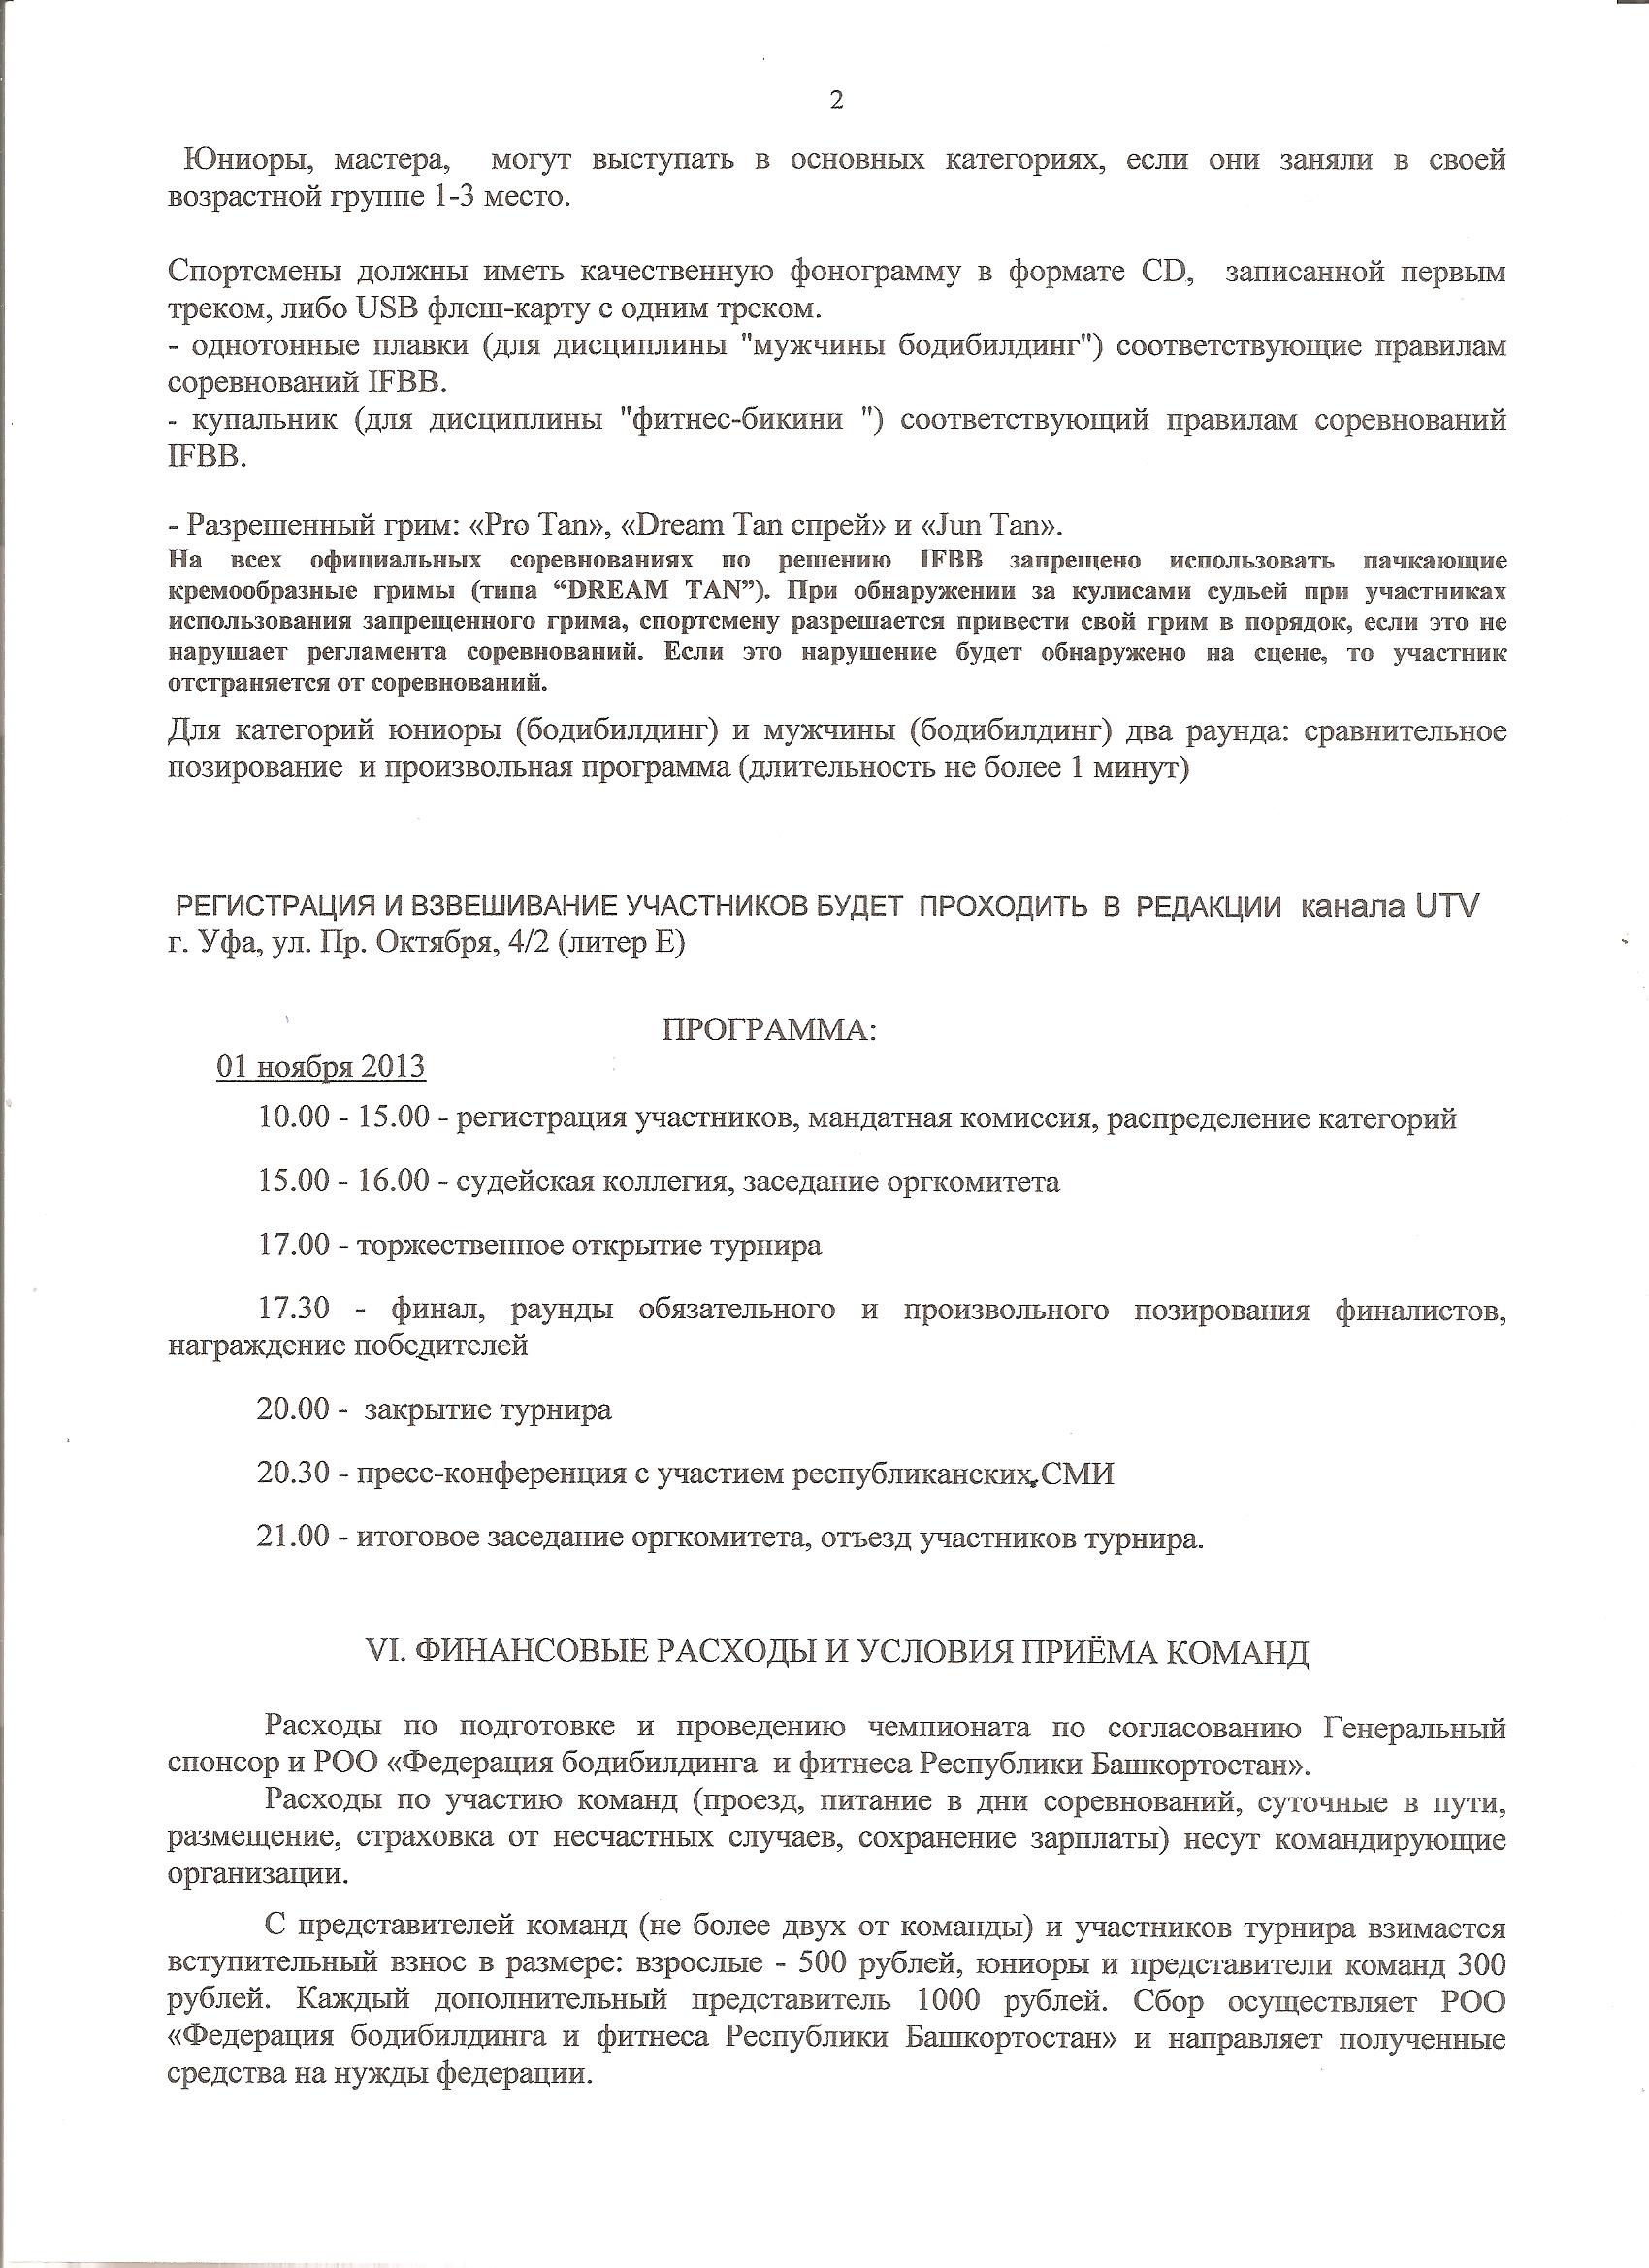 Regulations_MrUral_2014-11-01_002